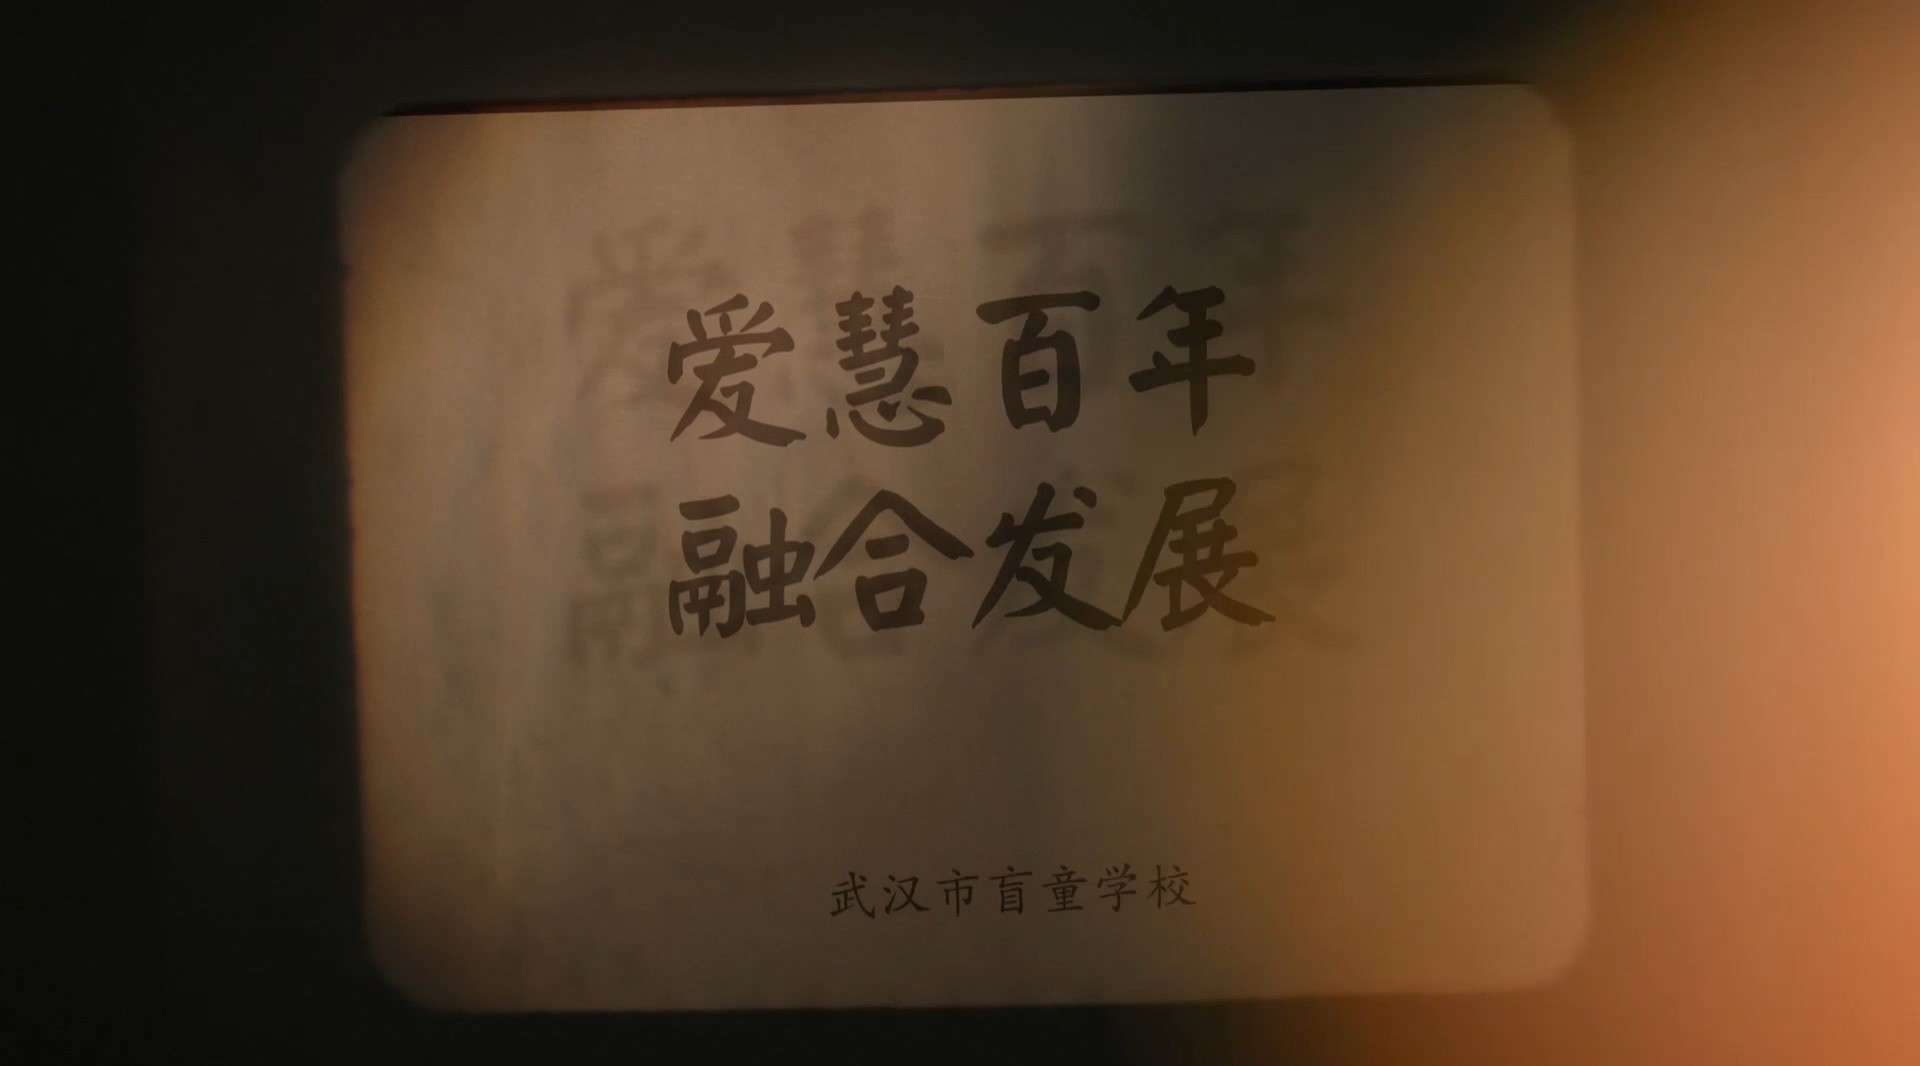 武汉盲校一百周年宣传片《爱慧百年 融合发展》20分钟版